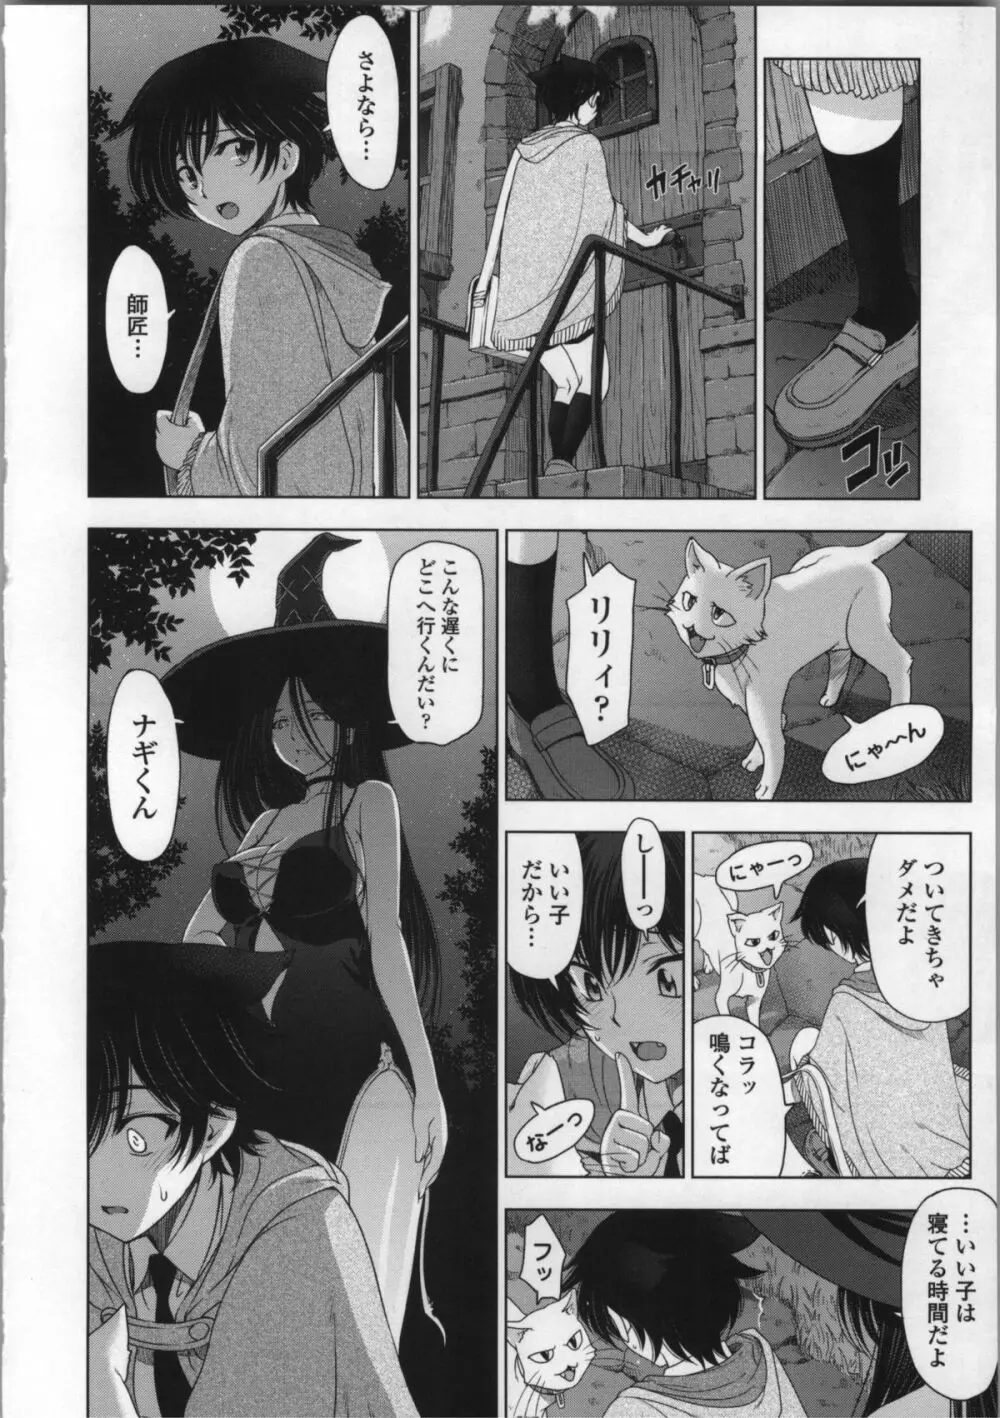 魔女×ショタ + 描き下ろし8P小冊子, 限定版 特典情報 ~ 限定版 20ページ